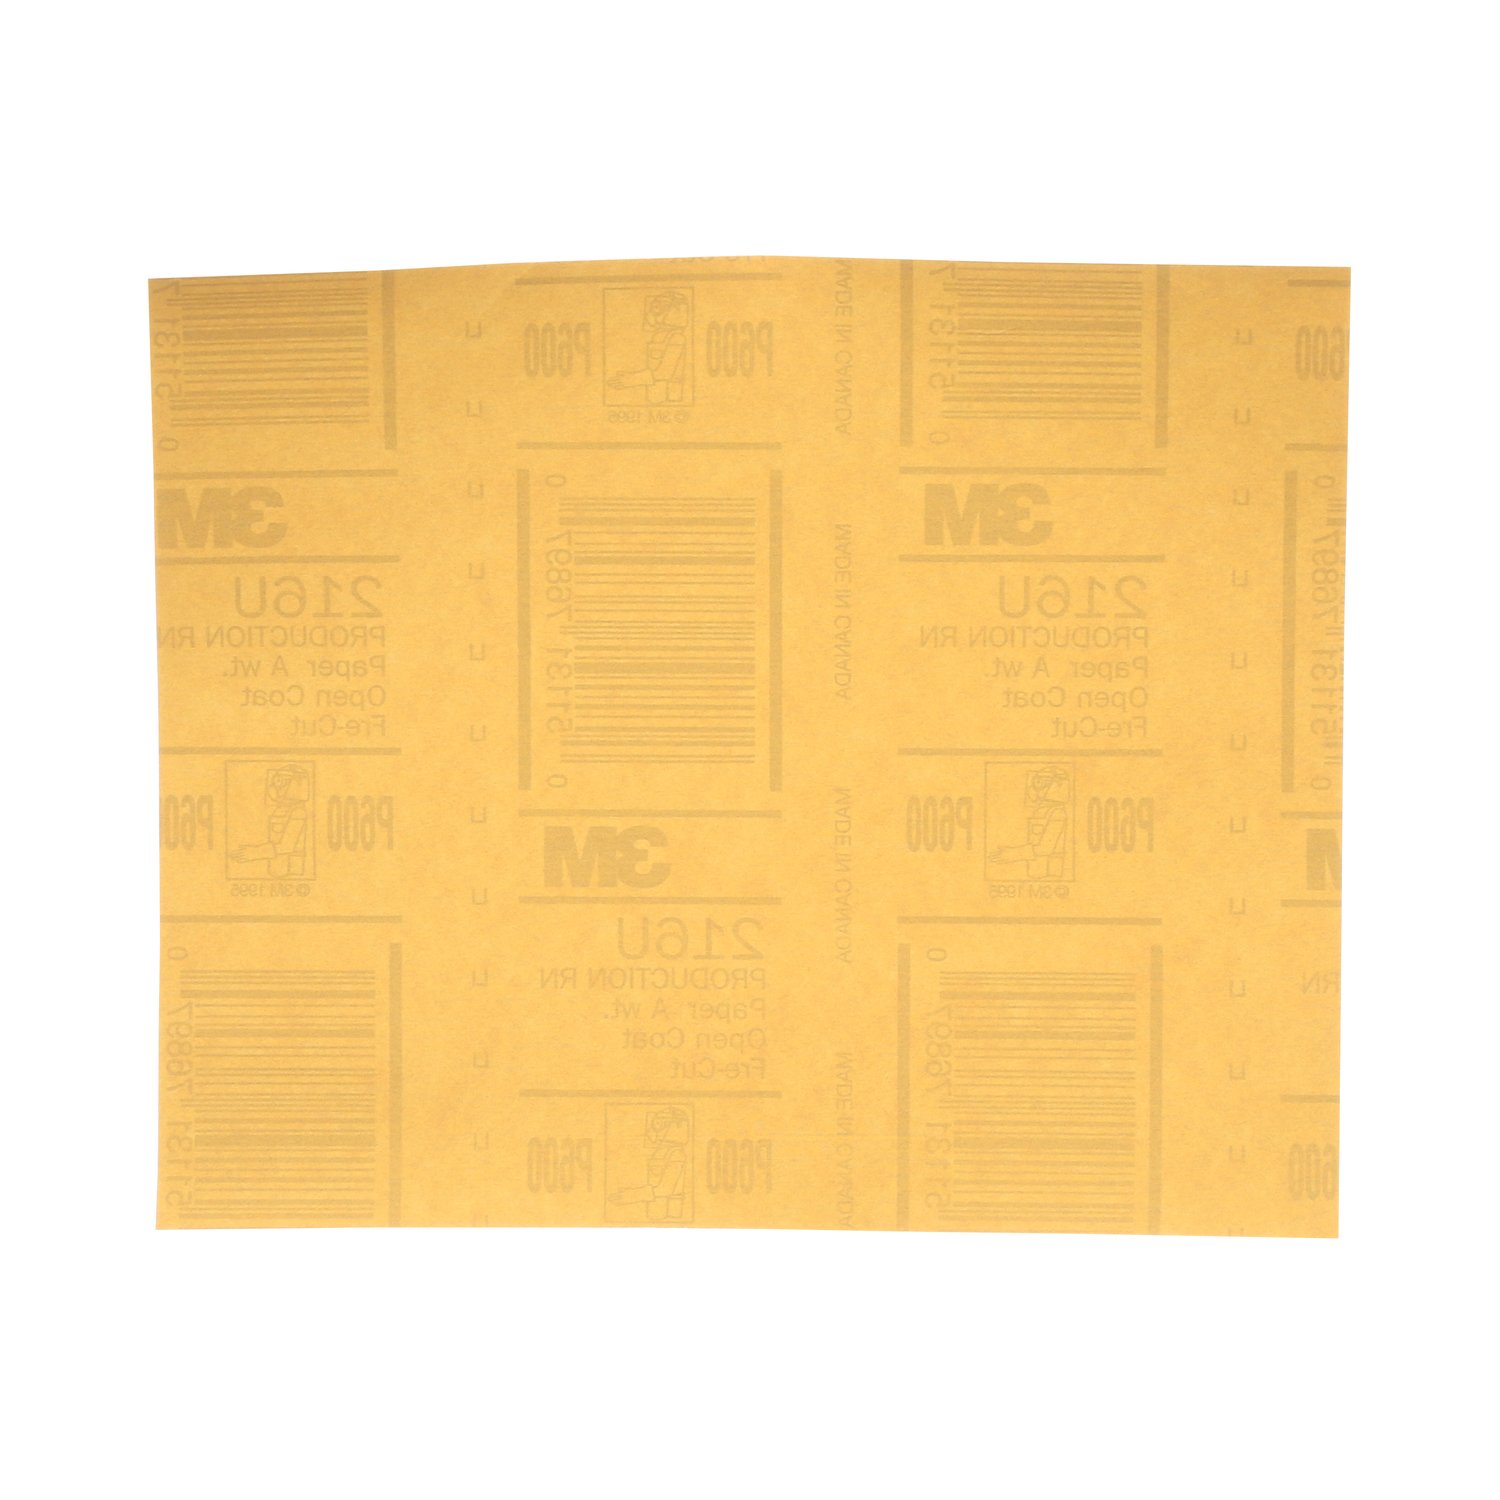 7000118276 - 3M Gold Abrasive Sheet, 02537, P600 grade, 9 in x 11 in, 50 sheets per
pack, 5 packs per case